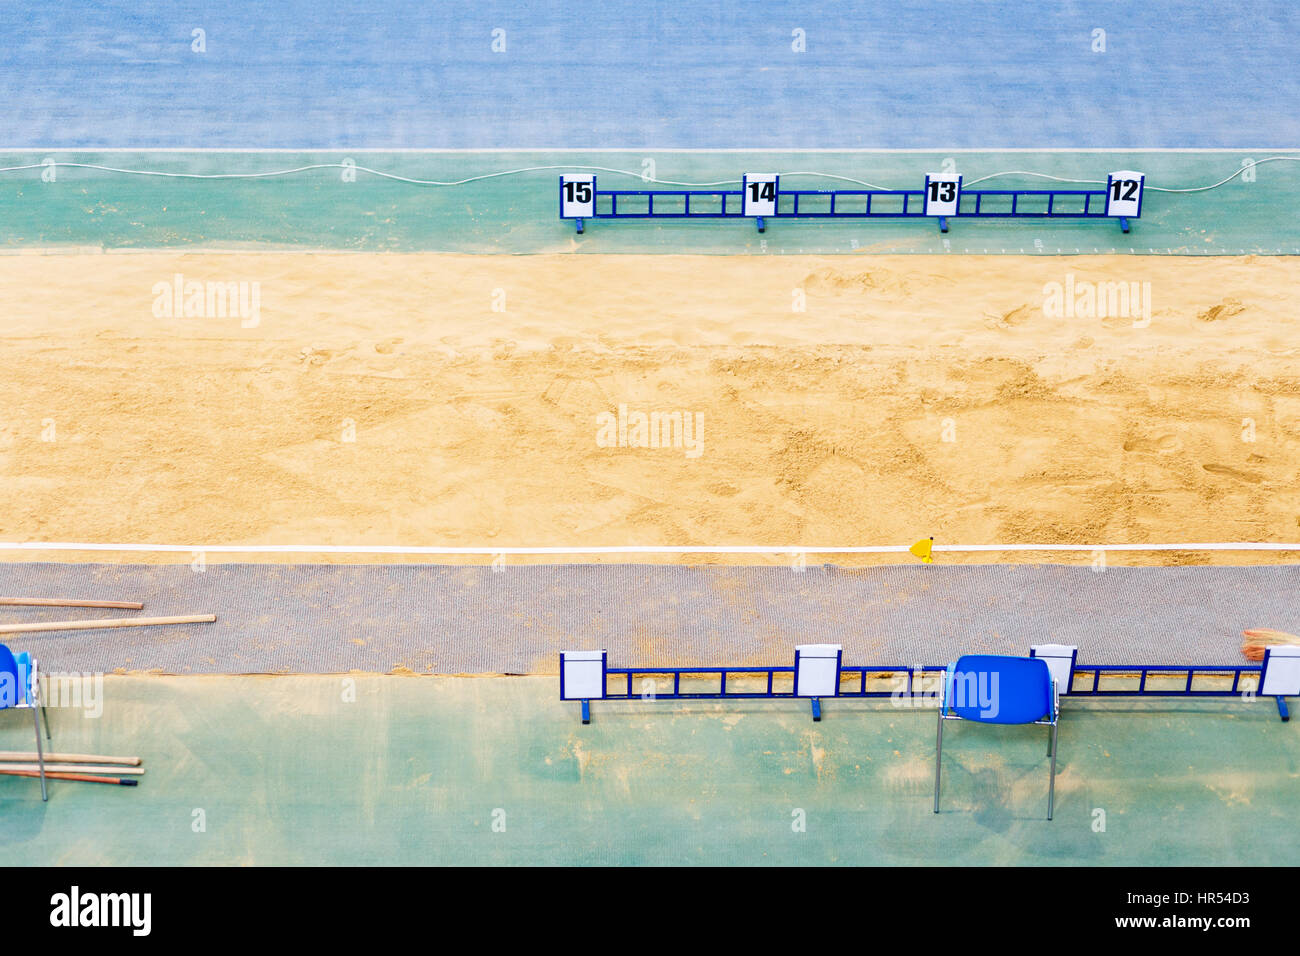 Buca di sabbia per lunghi e salto triplo su pista coperta e depositata la concorrenza Foto Stock